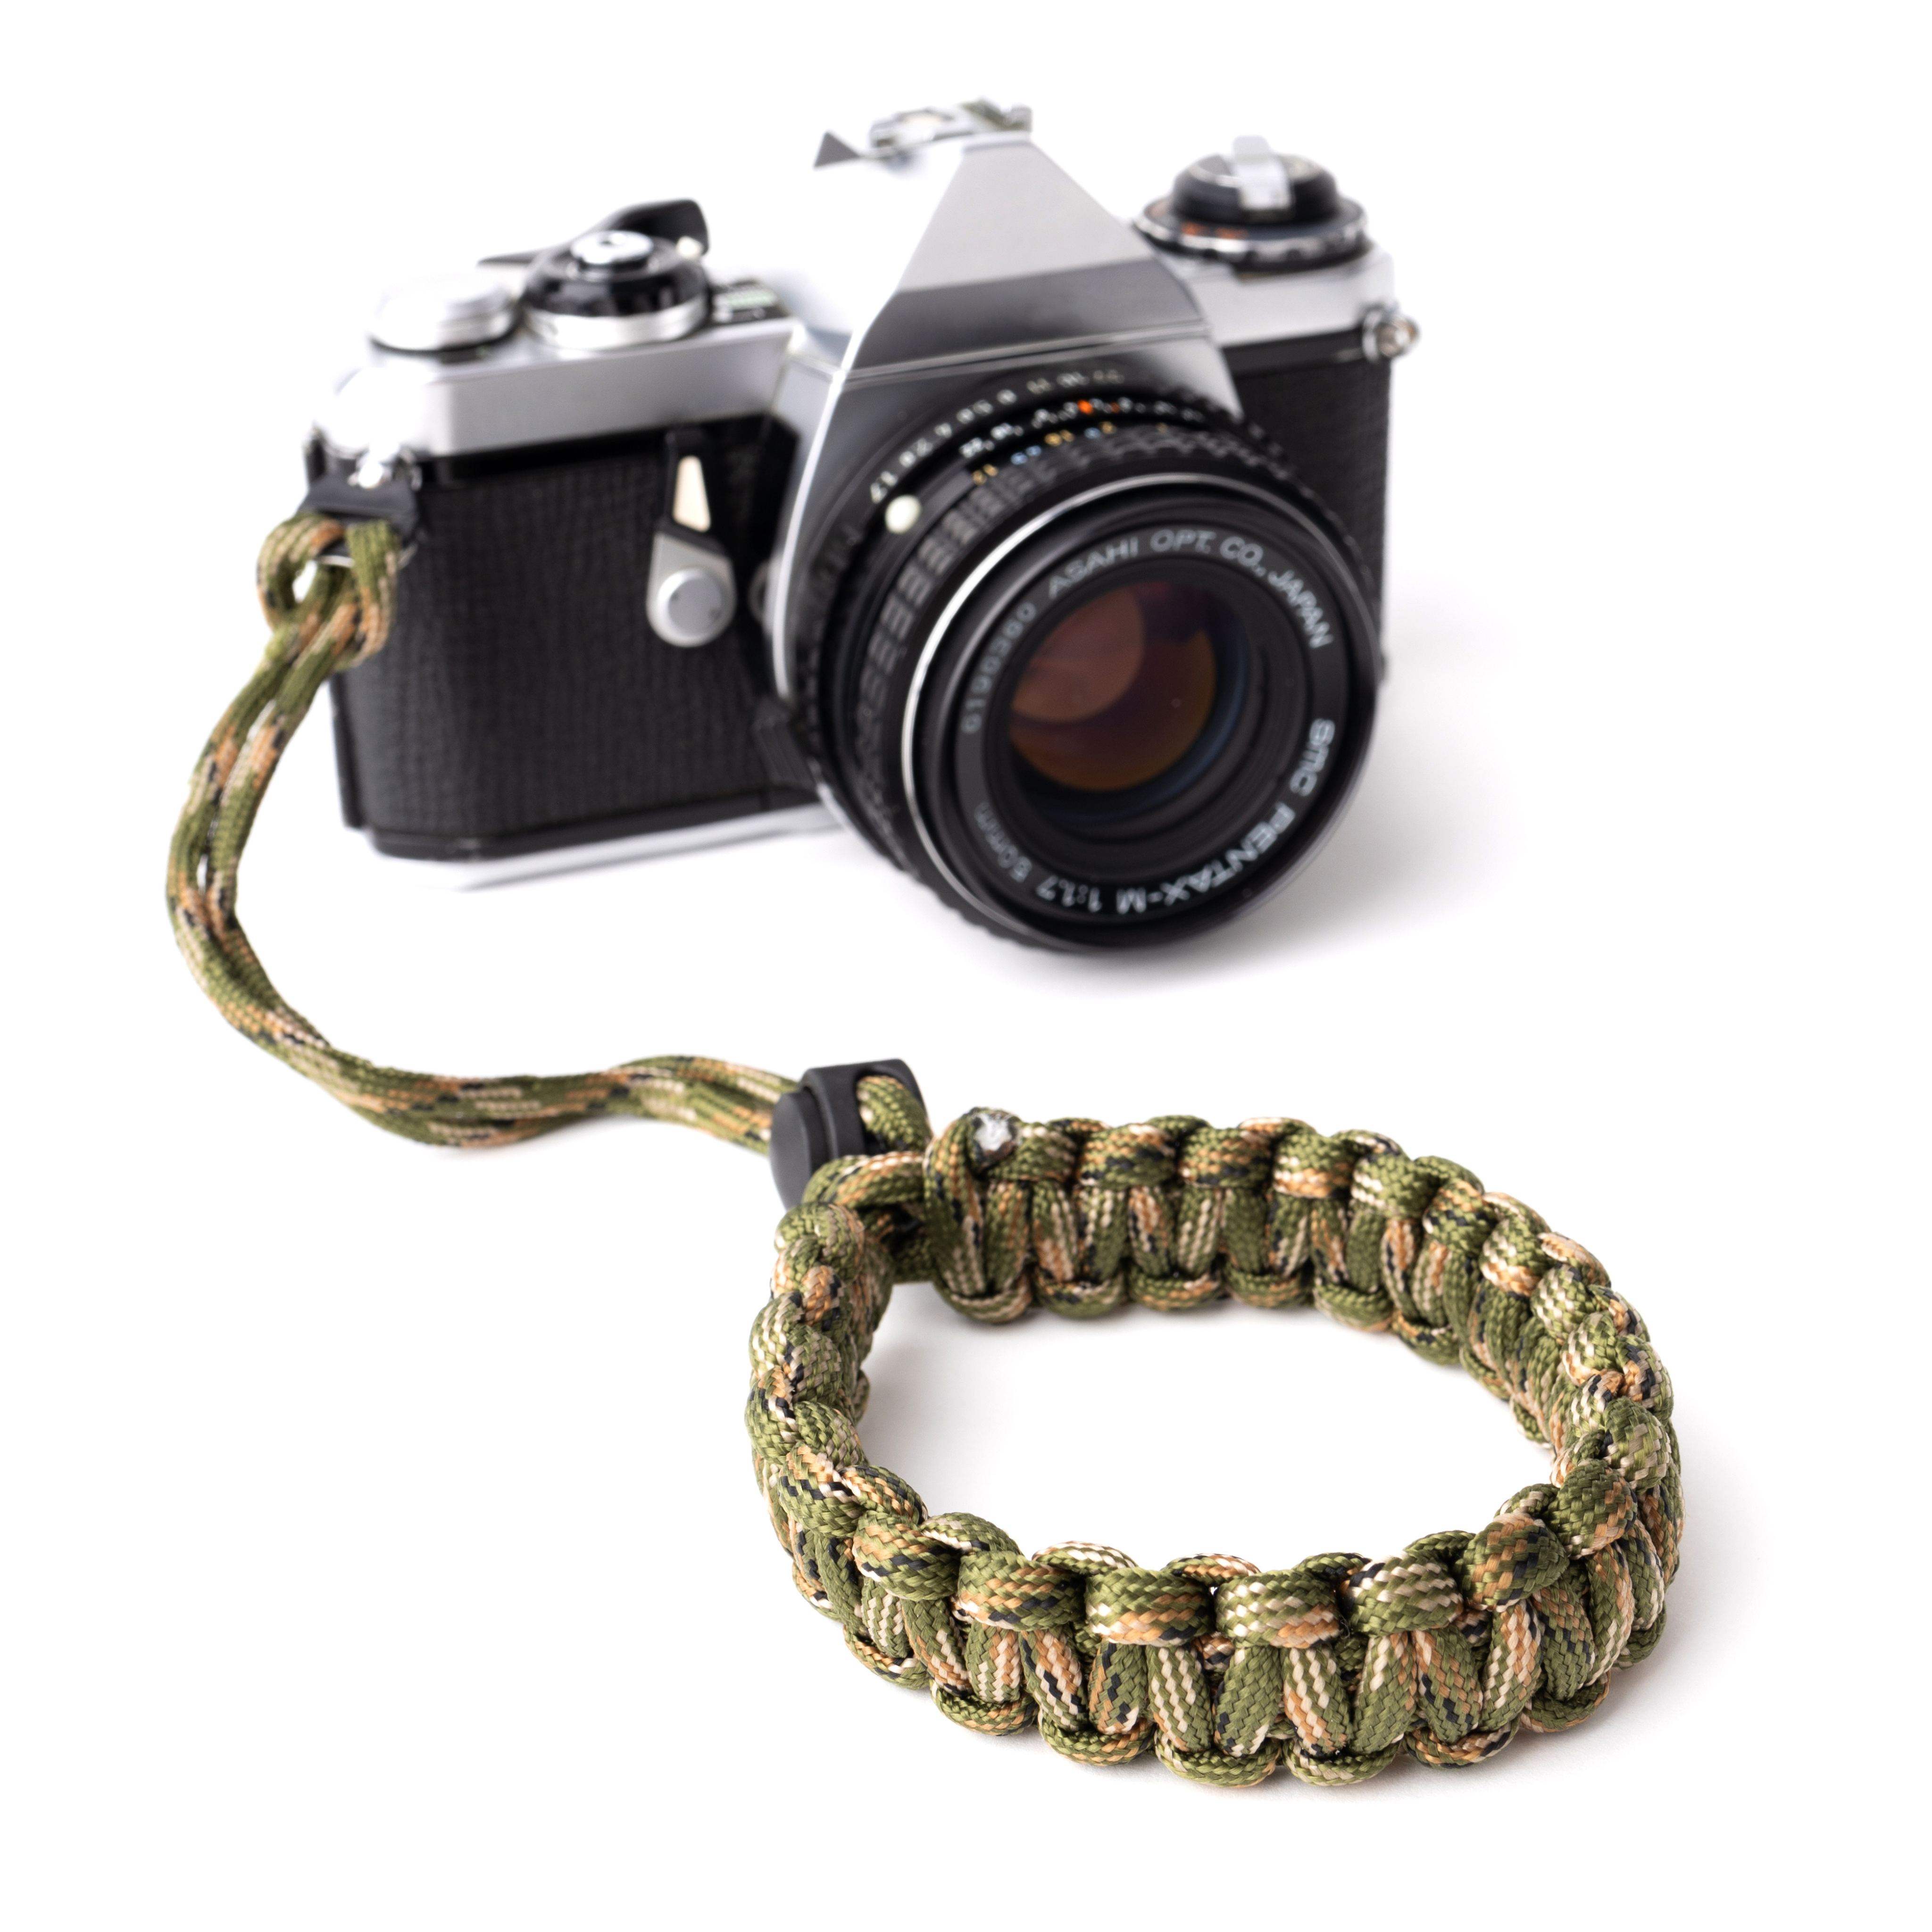 LENS-AID Kamera Handschlaufe aus Paracord fürs Camouflage/Grün Handschlaufe, Handgelenk, Kamera